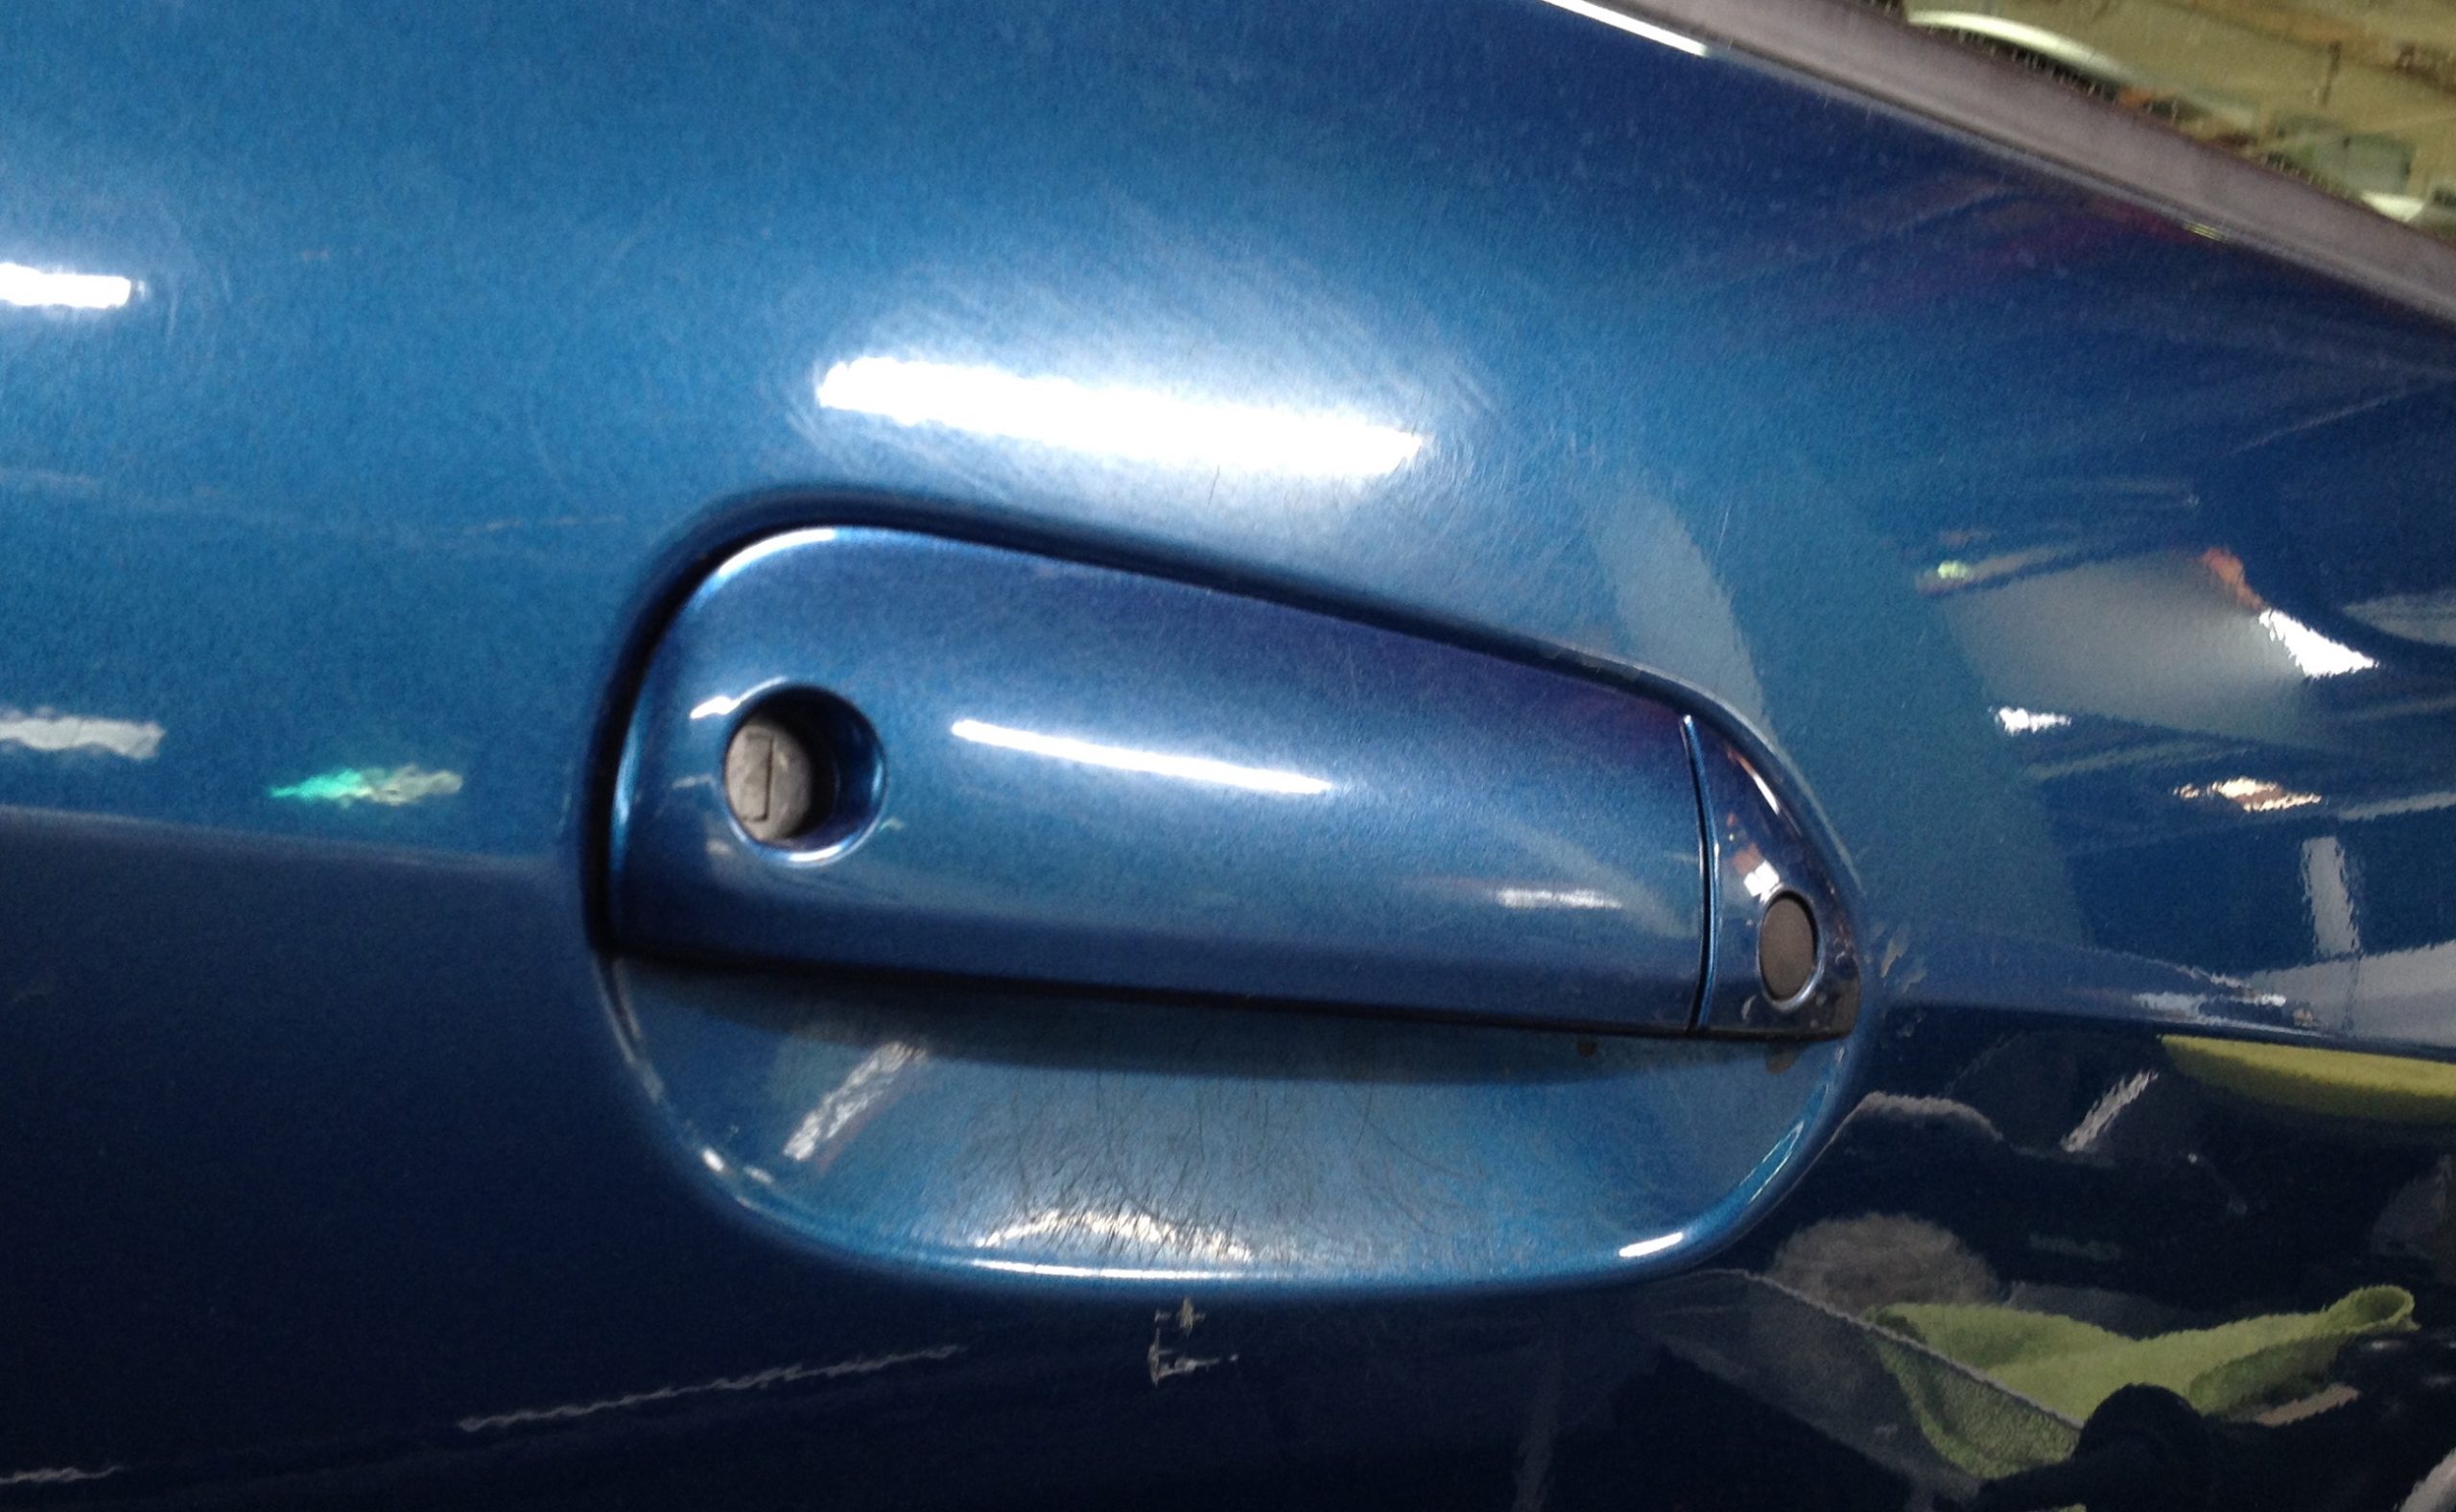 Scratches under door handle Honda Fit